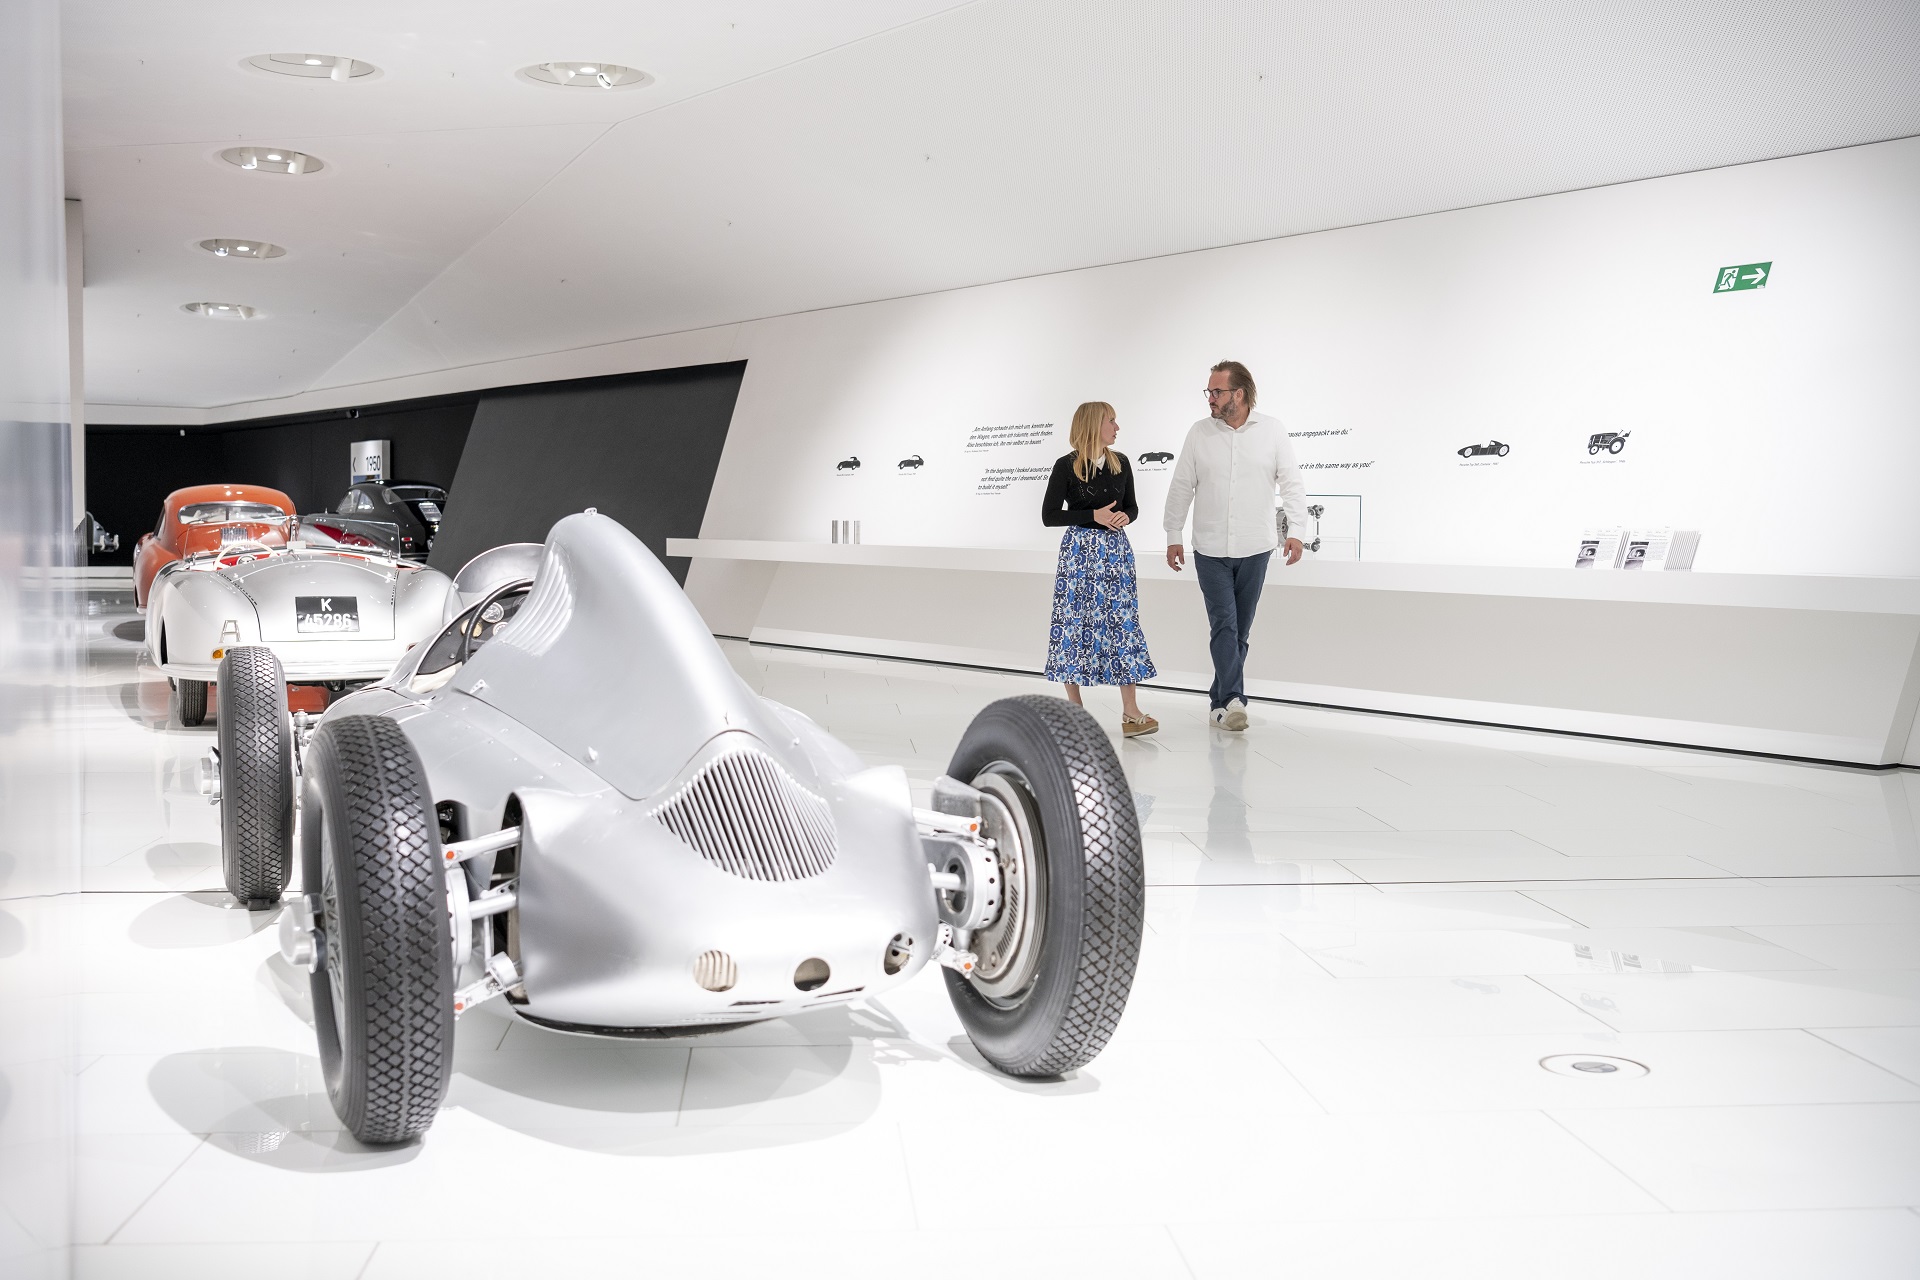 Фото из музея Porsche